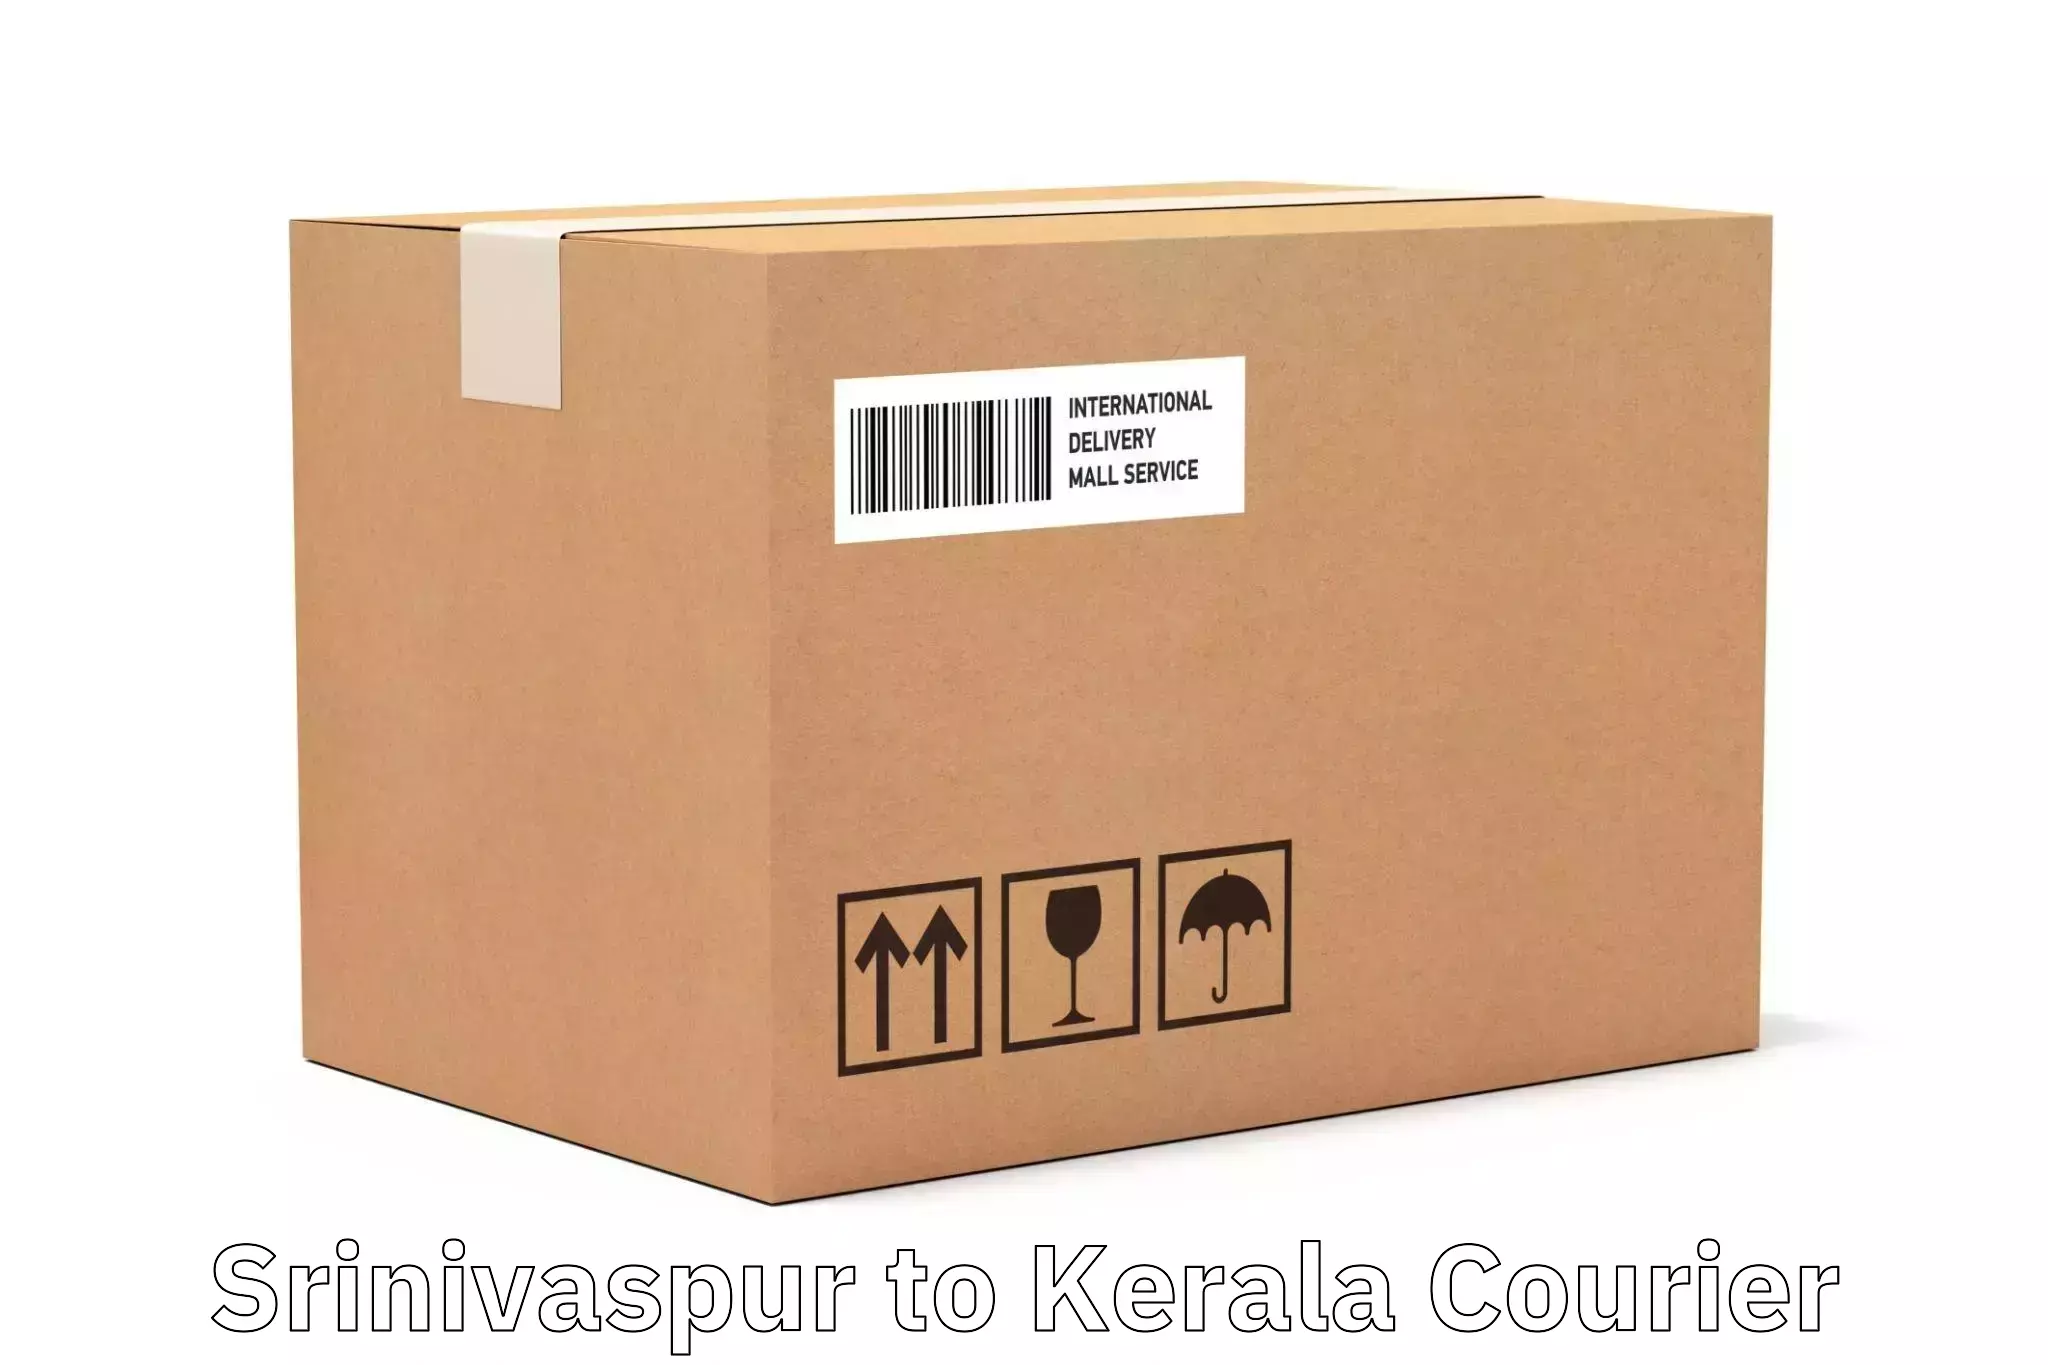 Innovative shipping solutions Srinivaspur to Mundakayam